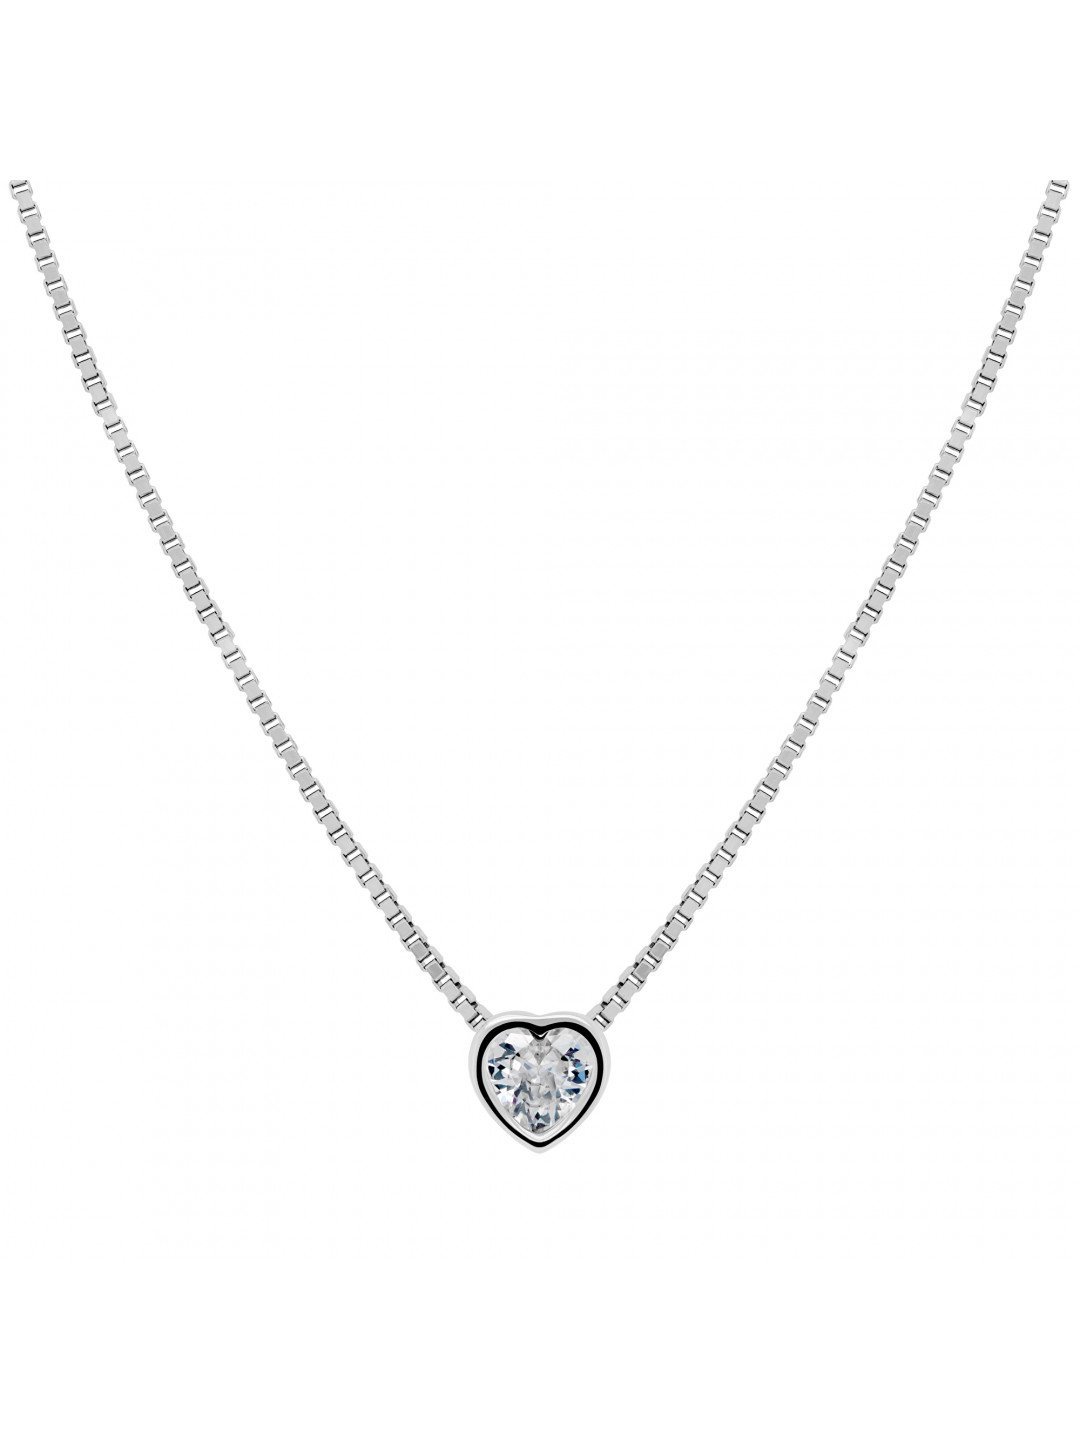 Brilio Silver Půvabný stříbrný náhrdelník Srdce NCL26W řetízek přívěsek